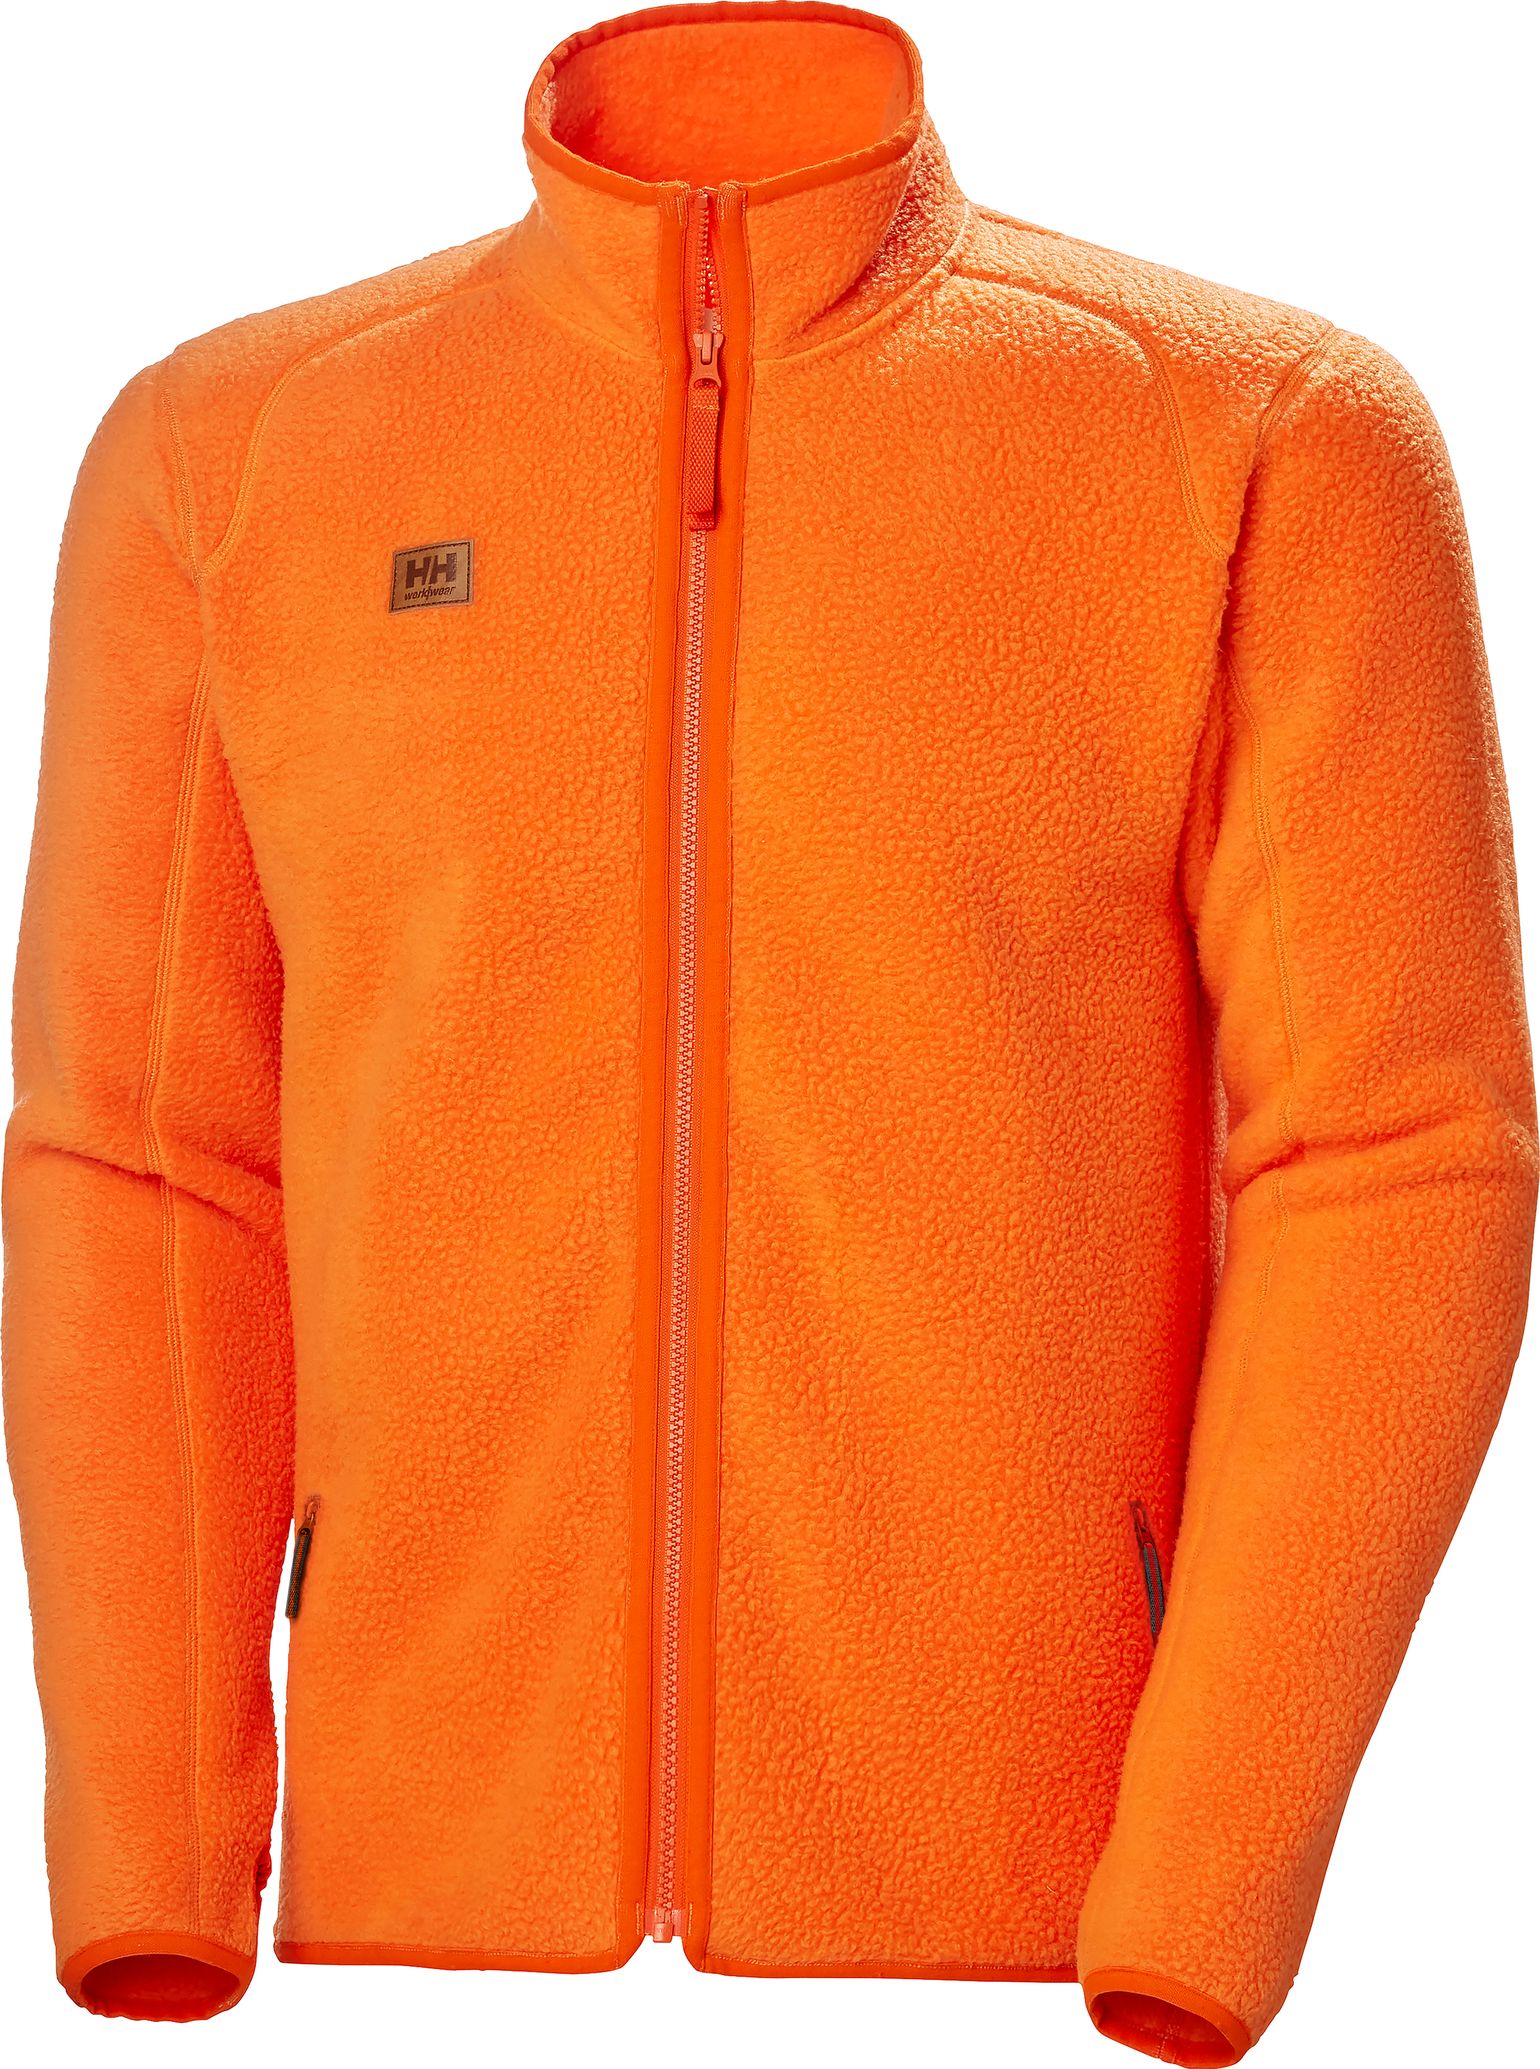 Helly Hansen Workwear Men's Heritage Pile Jacket Dark Orange